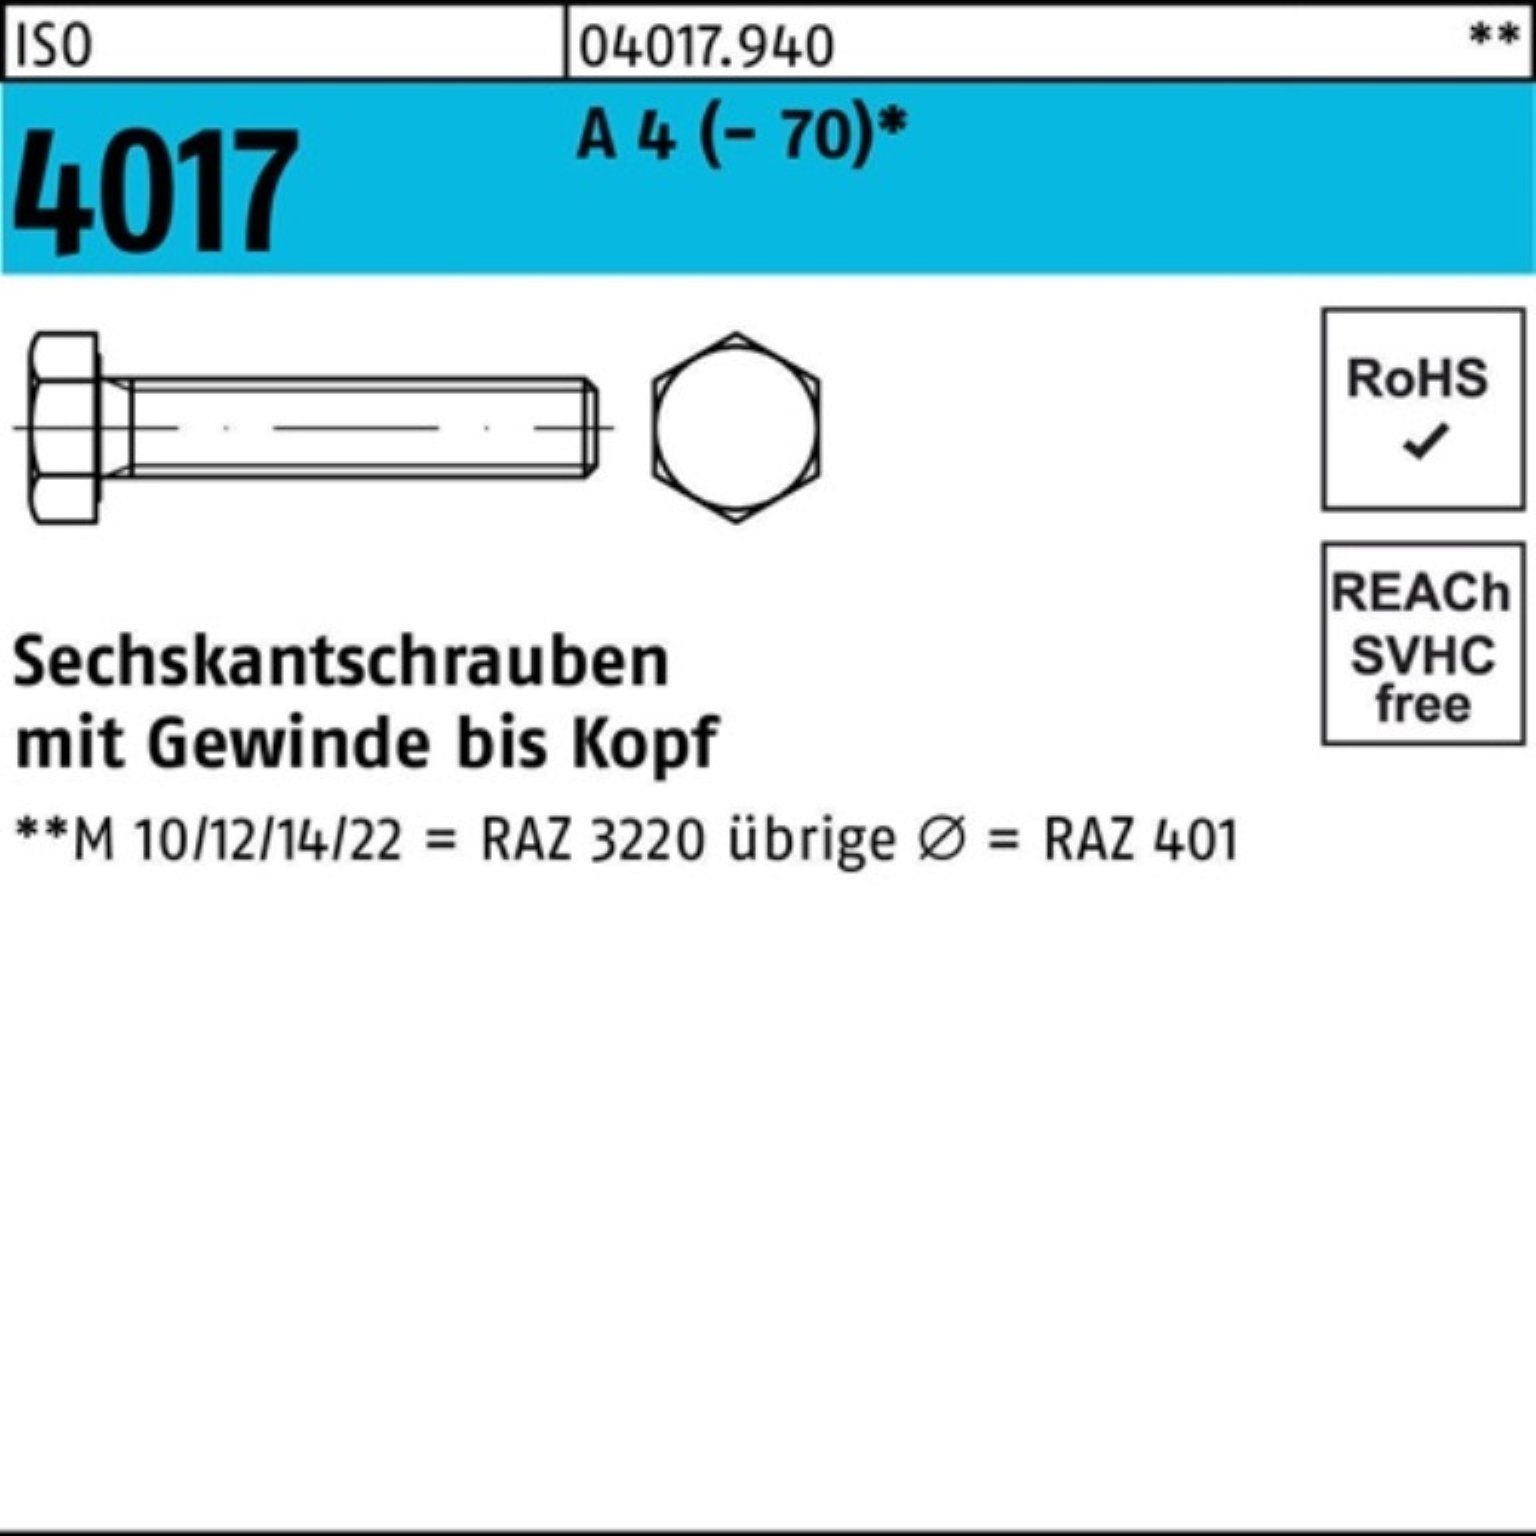 Bufab Sechskantschraube 200er Pack Sechskantschraube ISO 4017 VG M5x 35 A 4 (70) 200 Stück